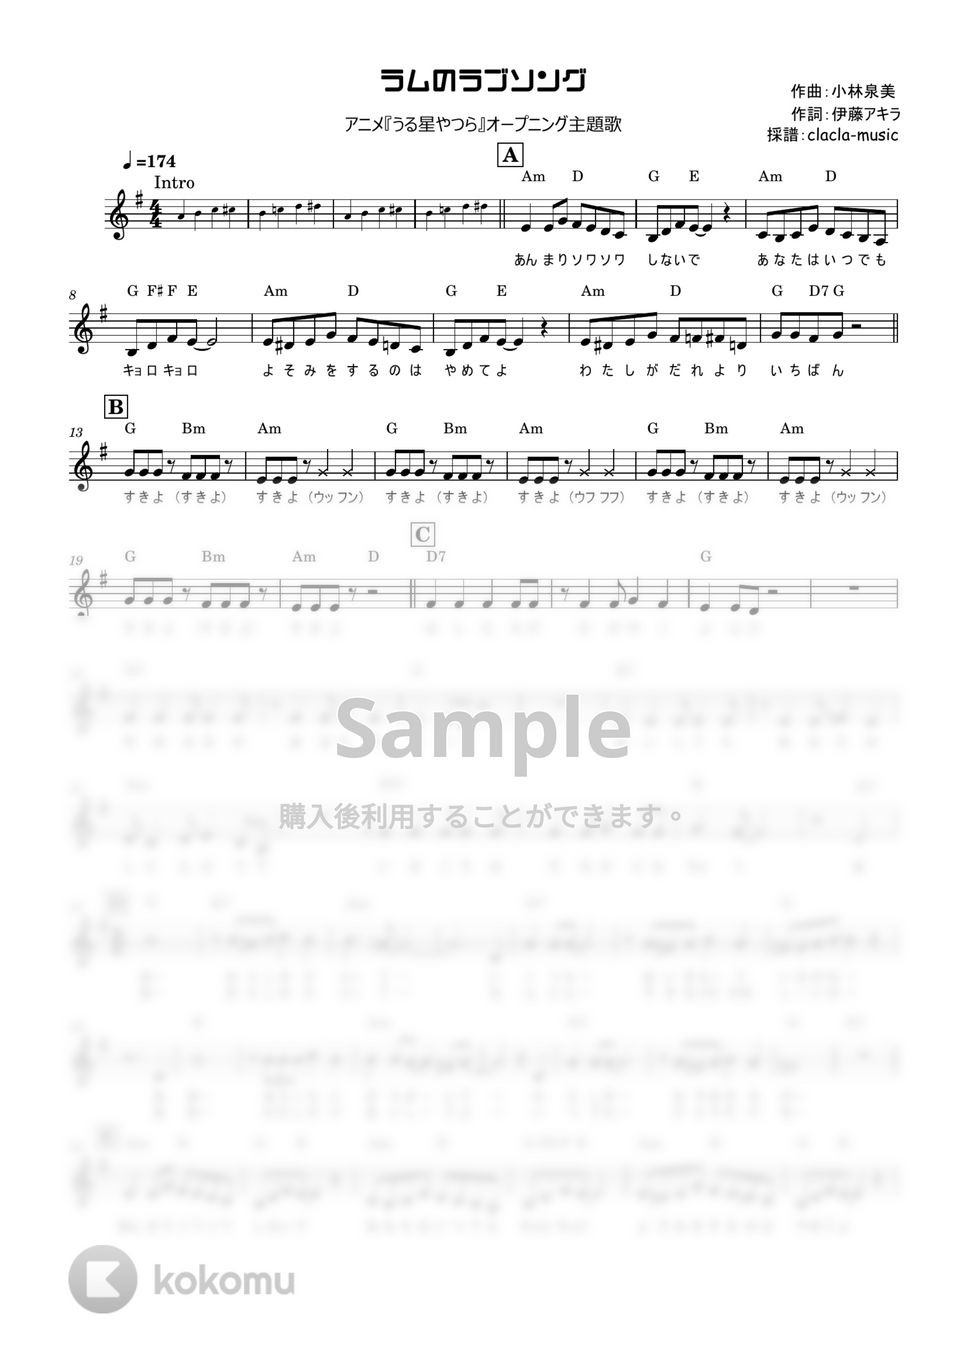 松谷祐子 - ラムのラブソング (うる星やつら、ボーカル、歌詞付き) by clacla-music